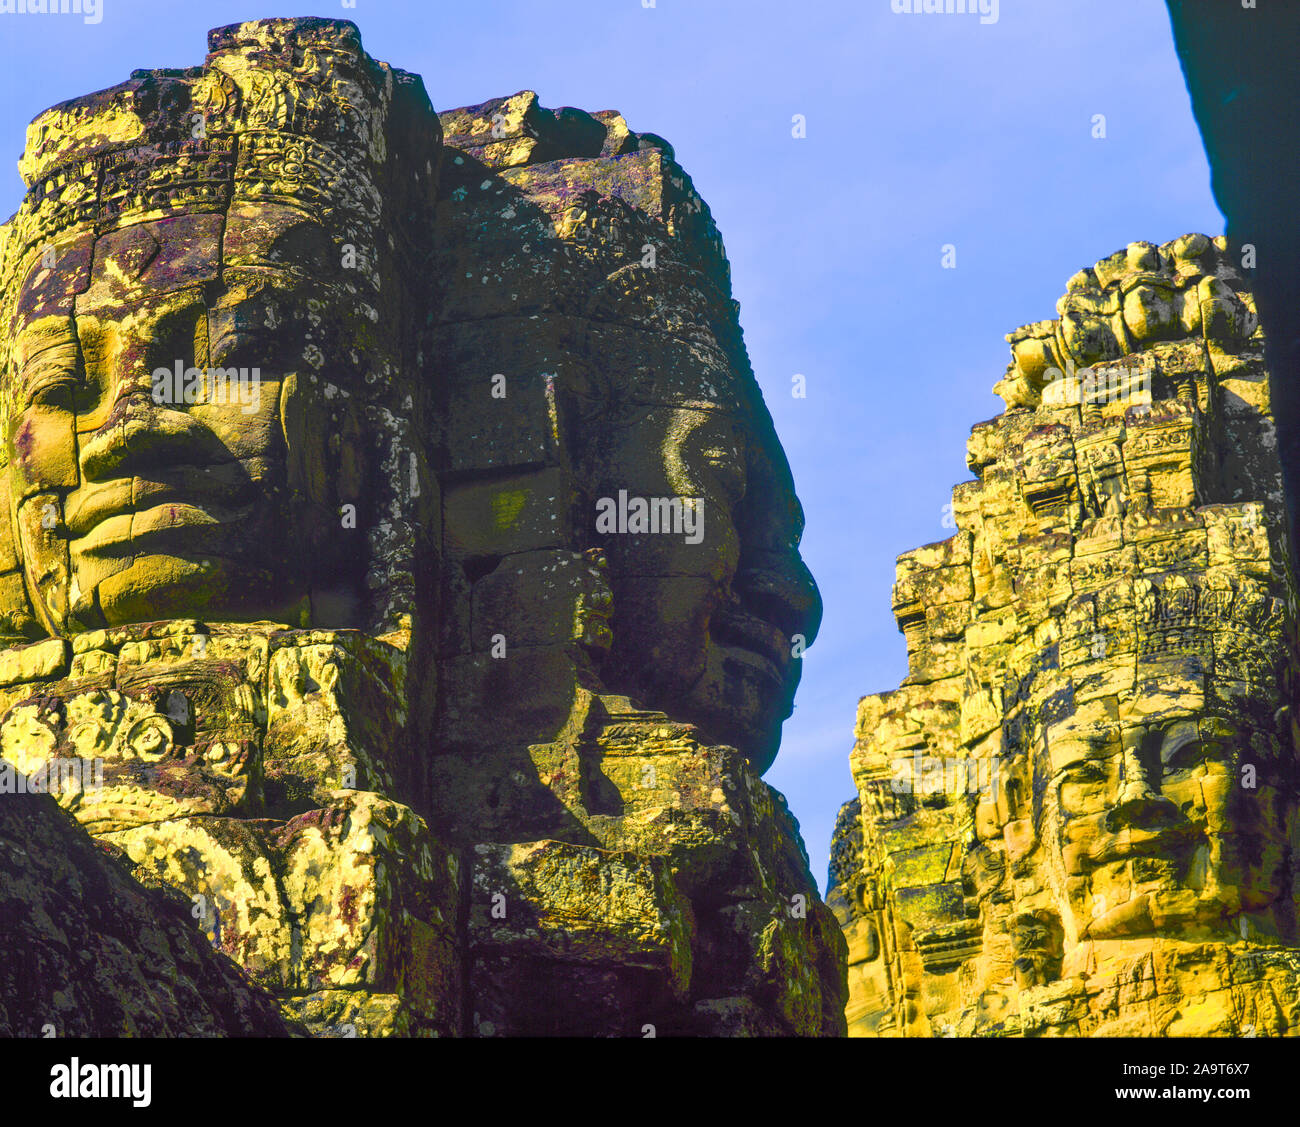 Sculptures énormes au temple Bayon, Angkor Watt Parc Archéologique, Cambodge, Ville d'Angkor Thom, construit 1100-1200 Culture AD Khmers ruines, SE Asia jungle Banque D'Images